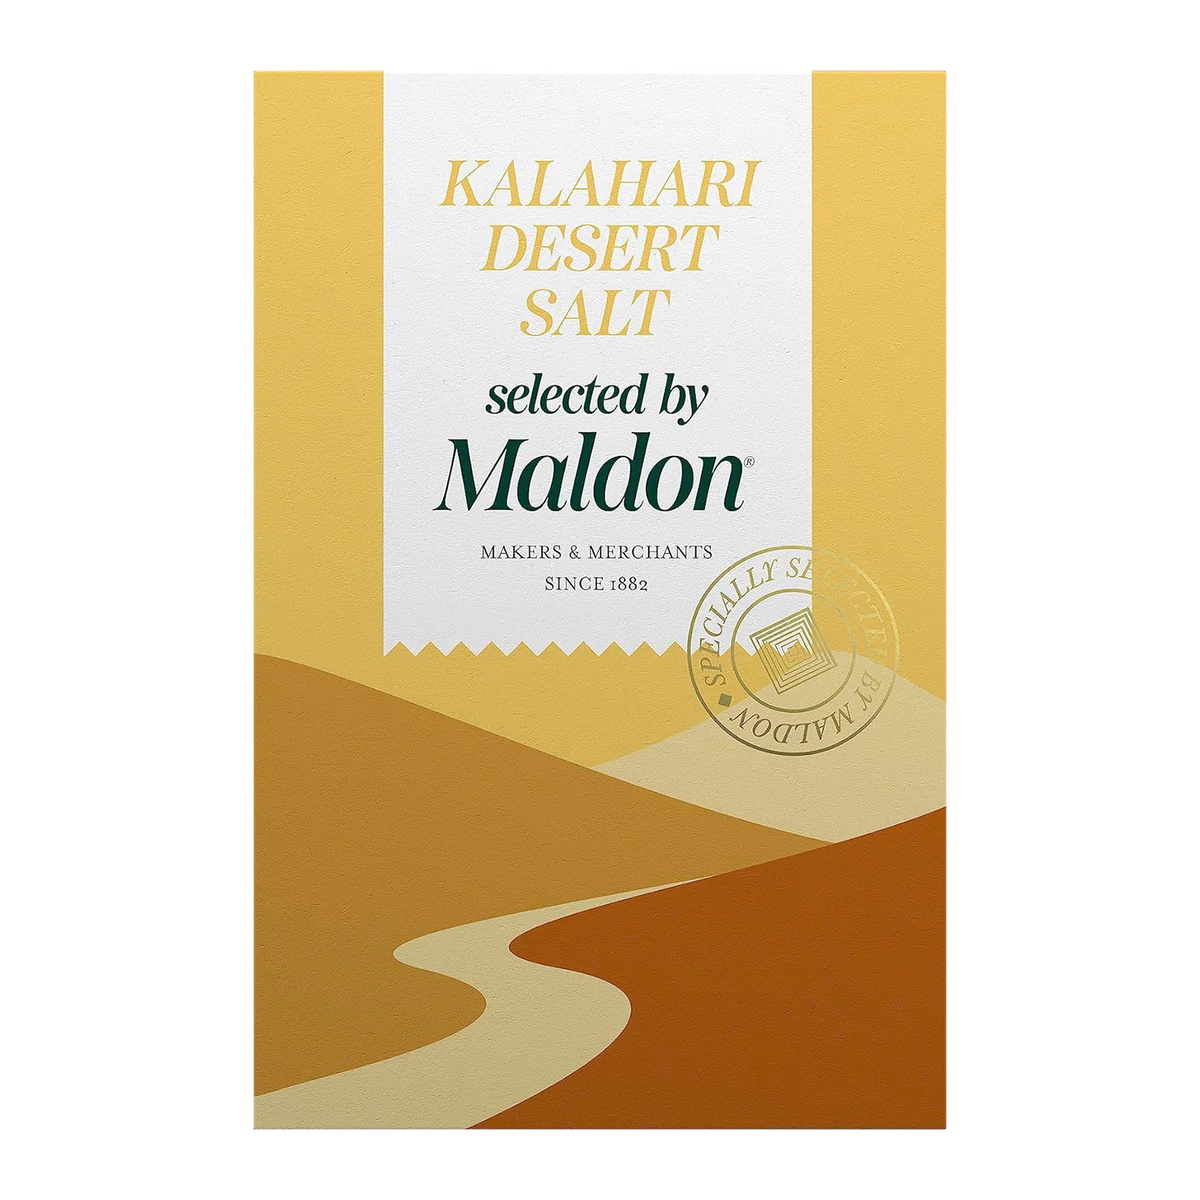 MALDON hrubá Kalahárská pouštní sůl 250g